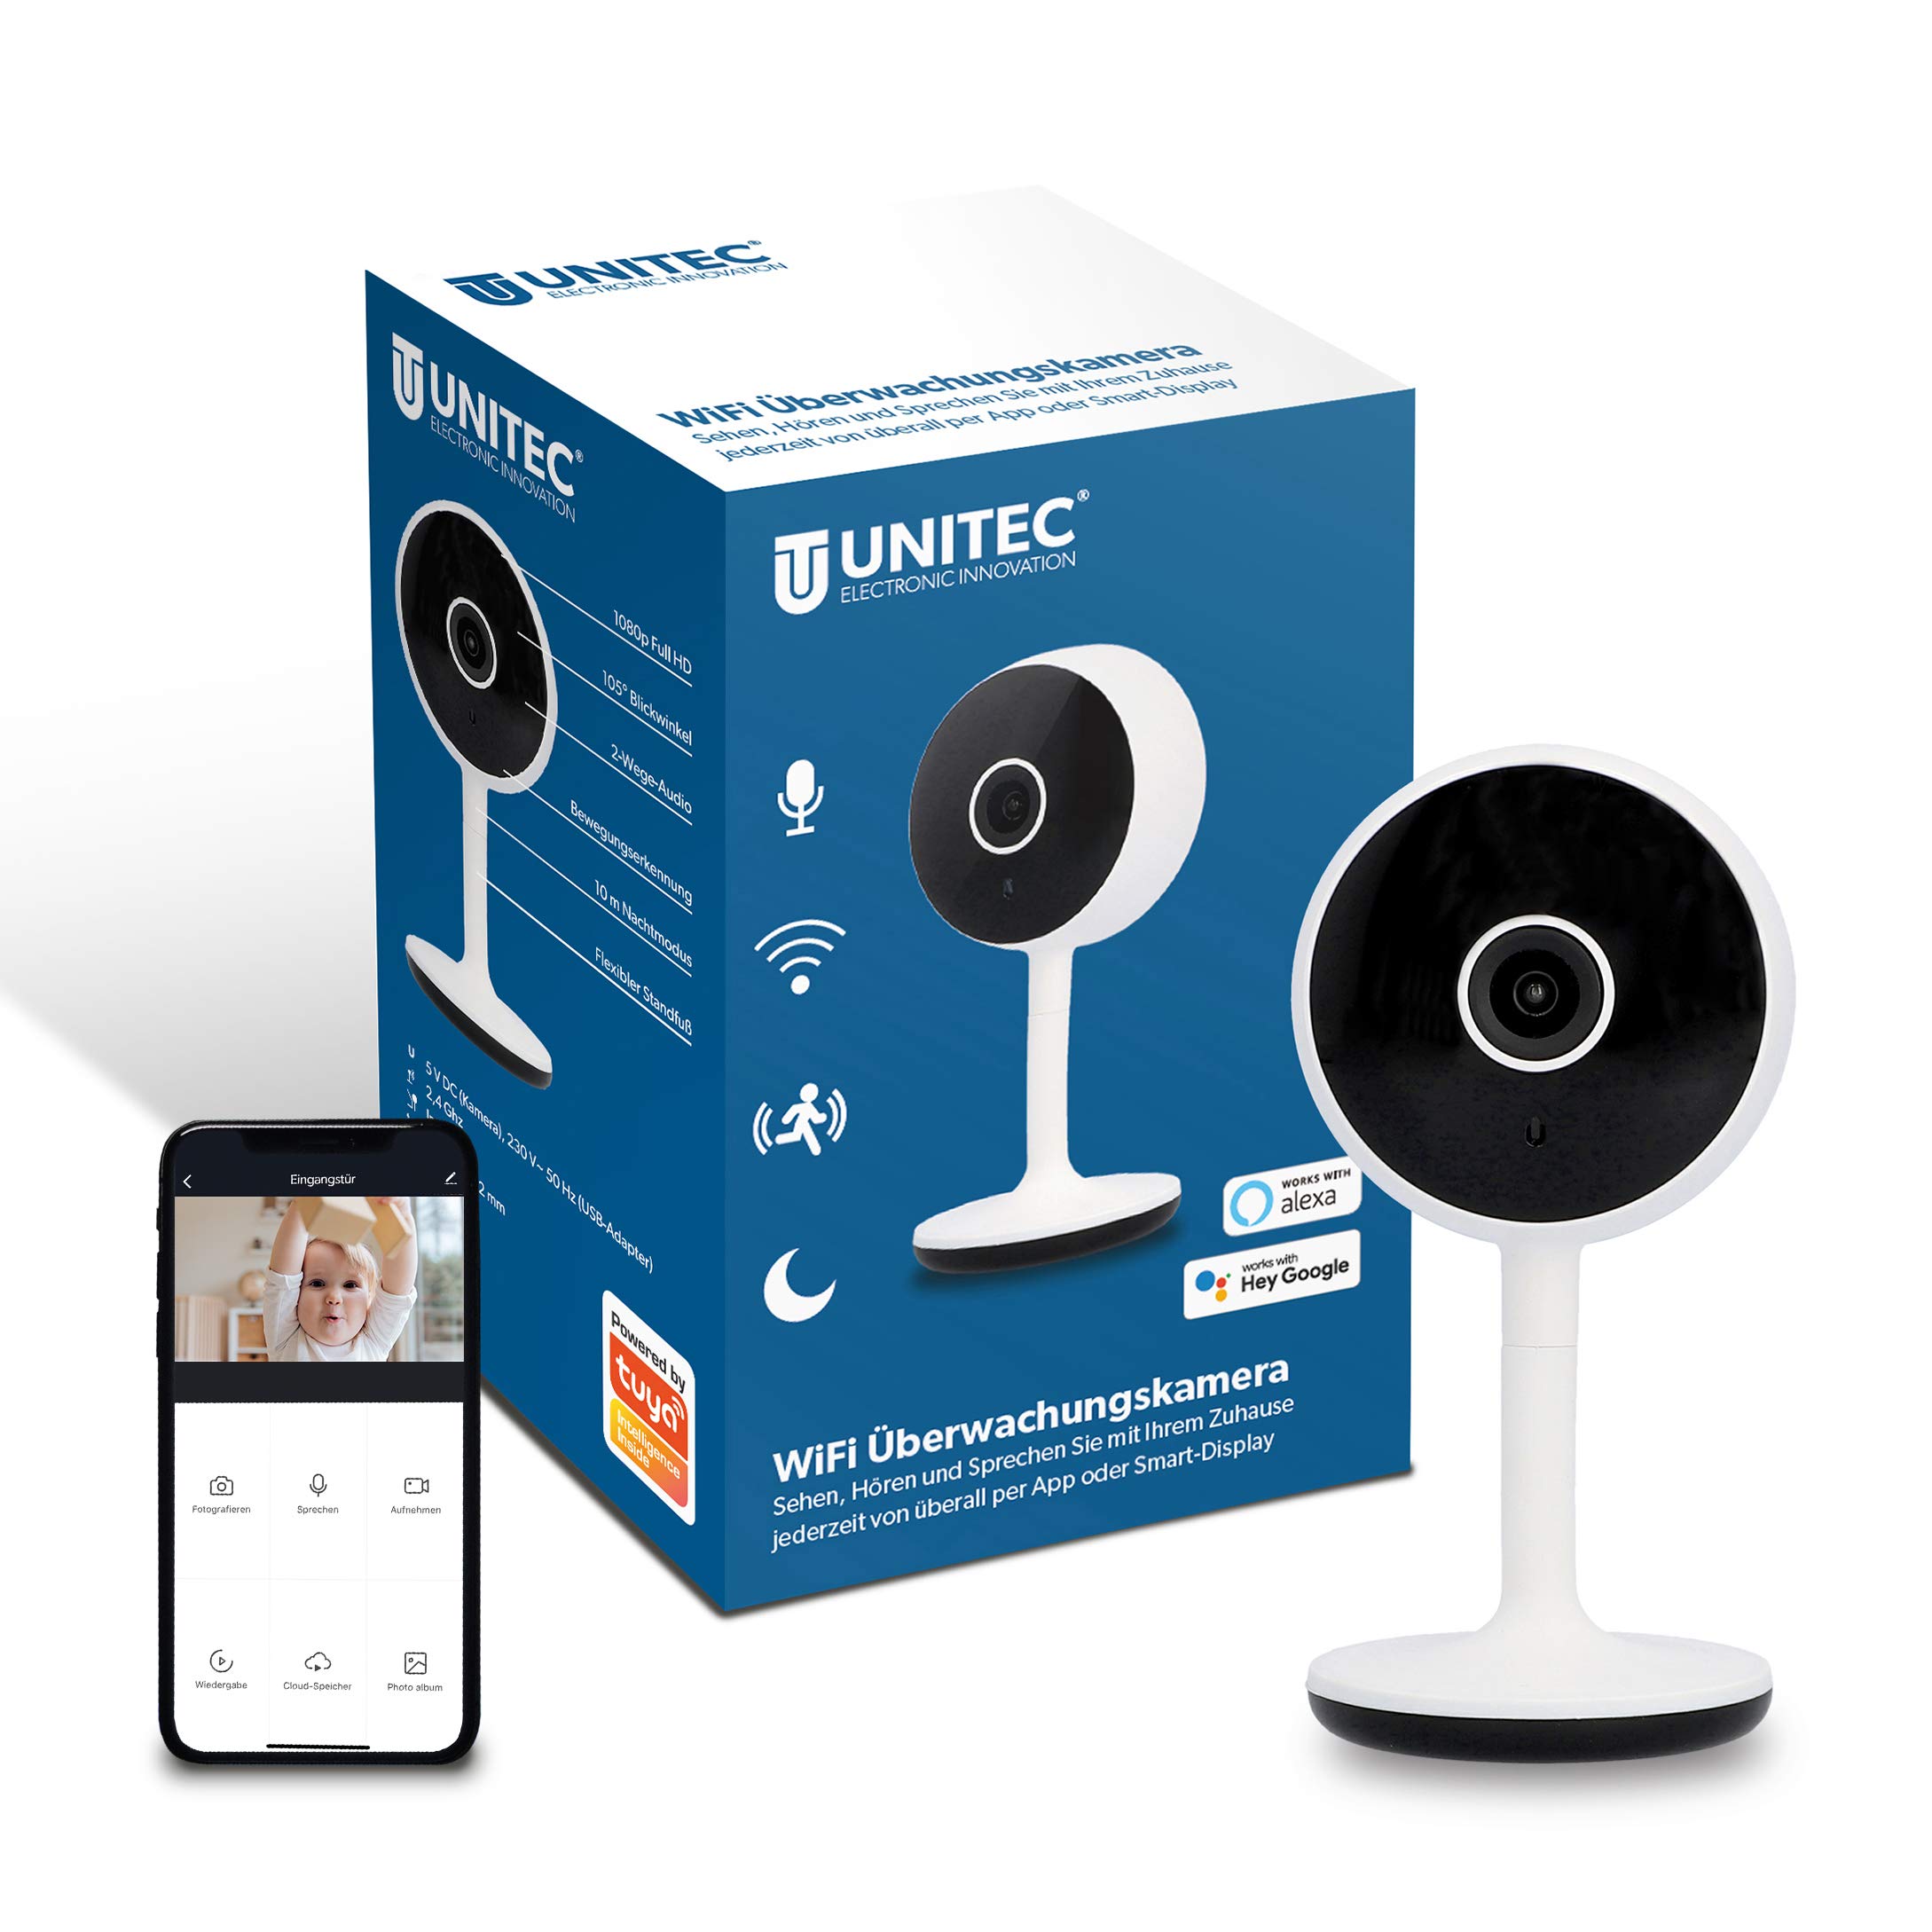 UNITEC WIFI Smarte Überwachungskamera, FULL HD Video-Kamera, Bewegungs- und Geräuscherkennung, Nachtsicht-Funktion, 1 Stück (1er Pack)